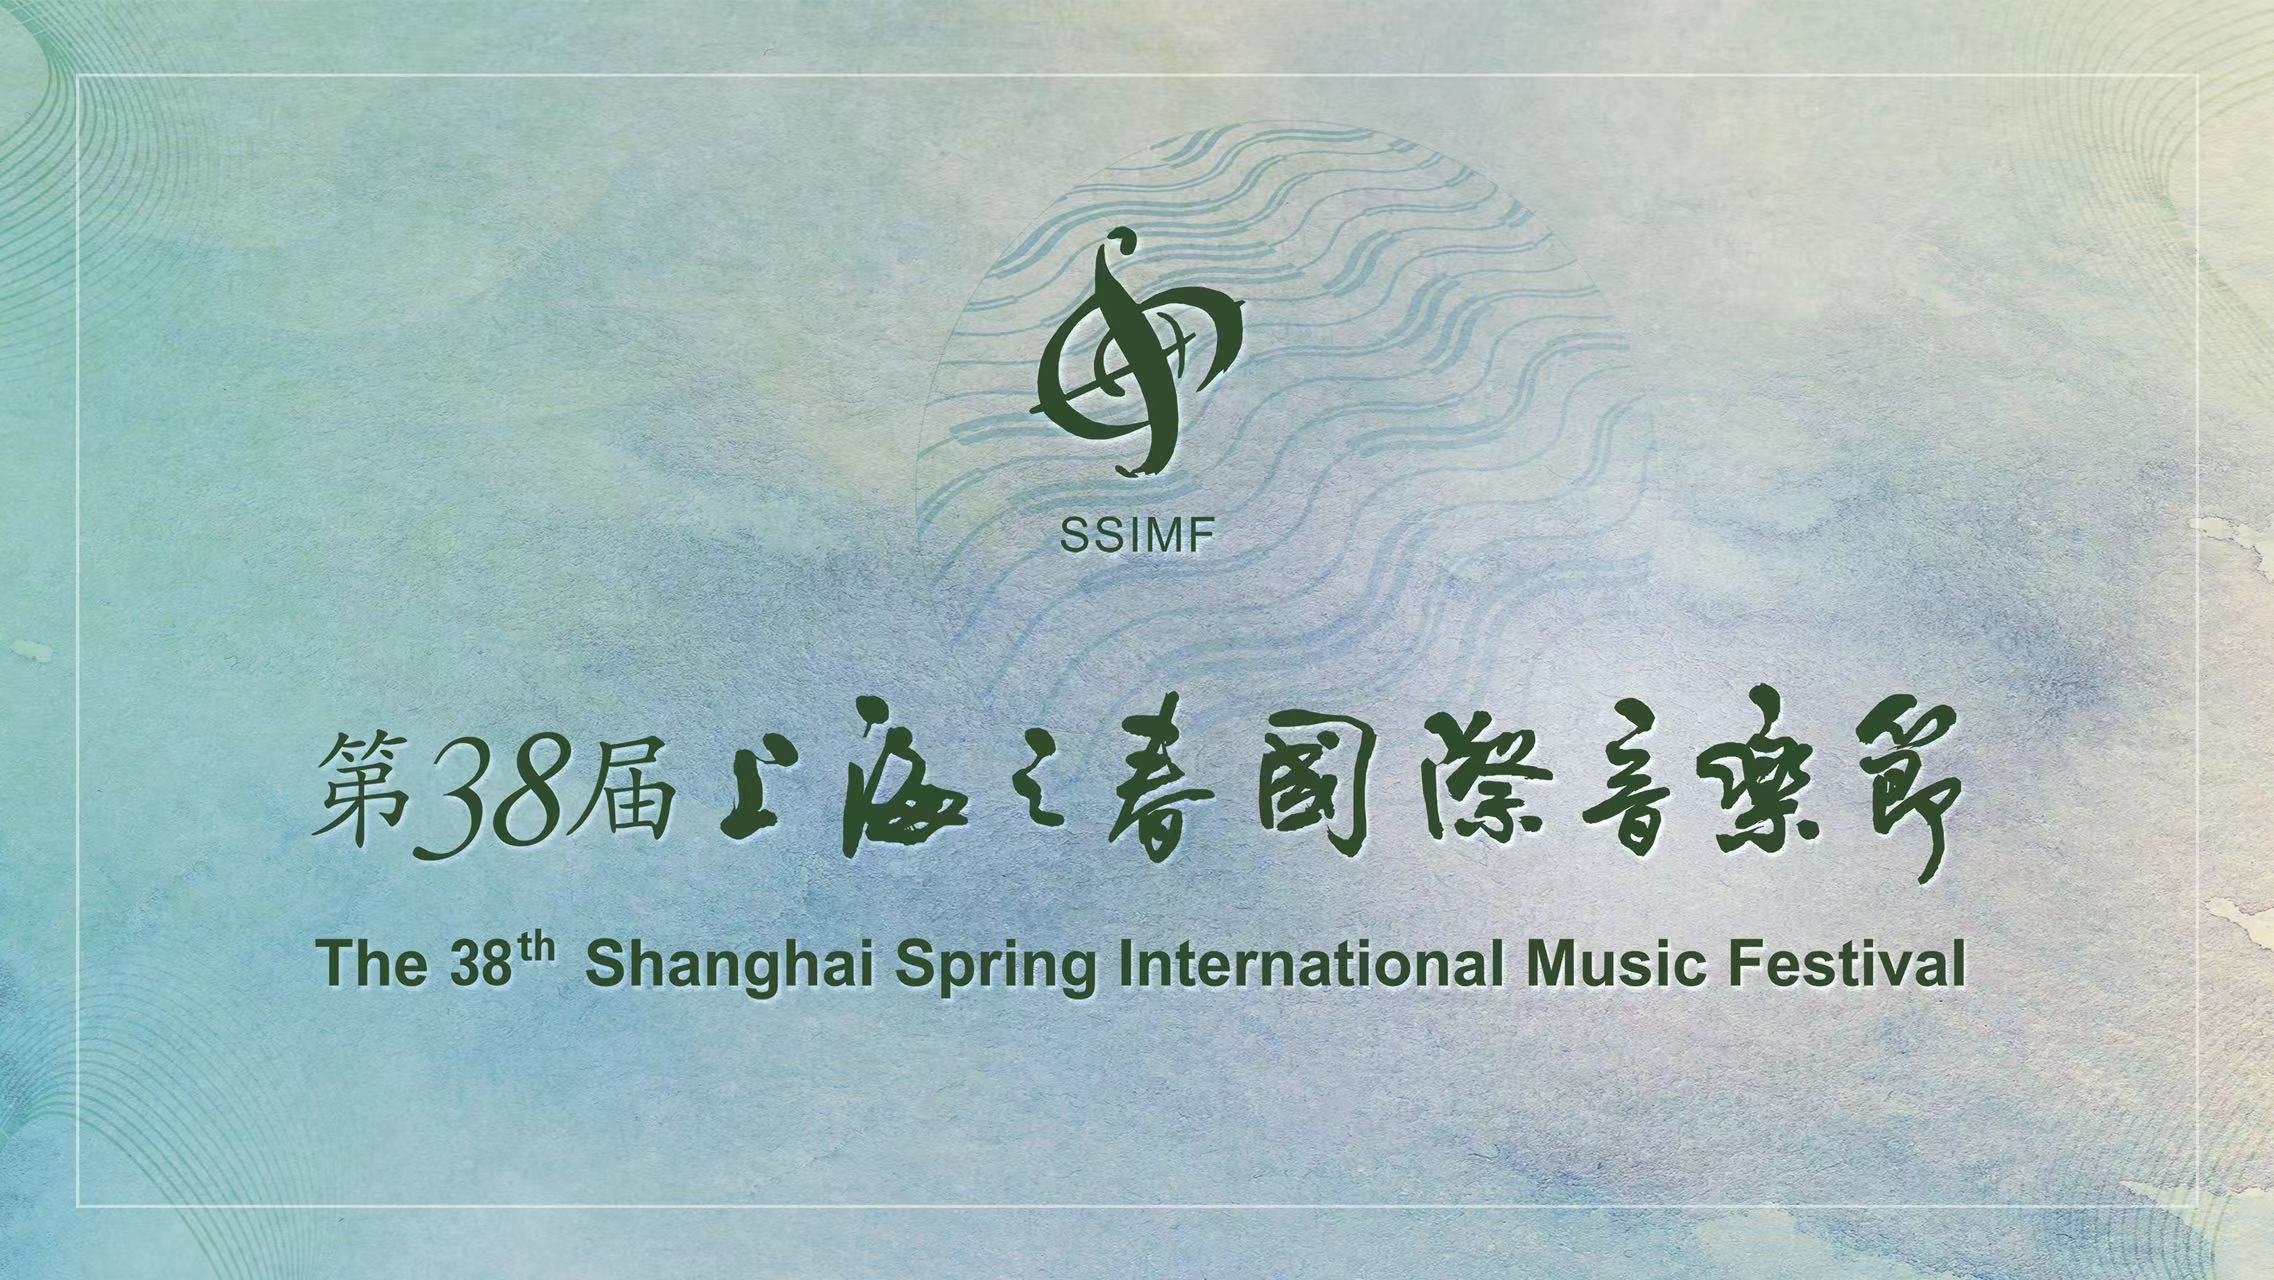 文艺评论丨第38届上海之春国际音乐节音乐板块：以“起承转合”之思步入圆梦新征程